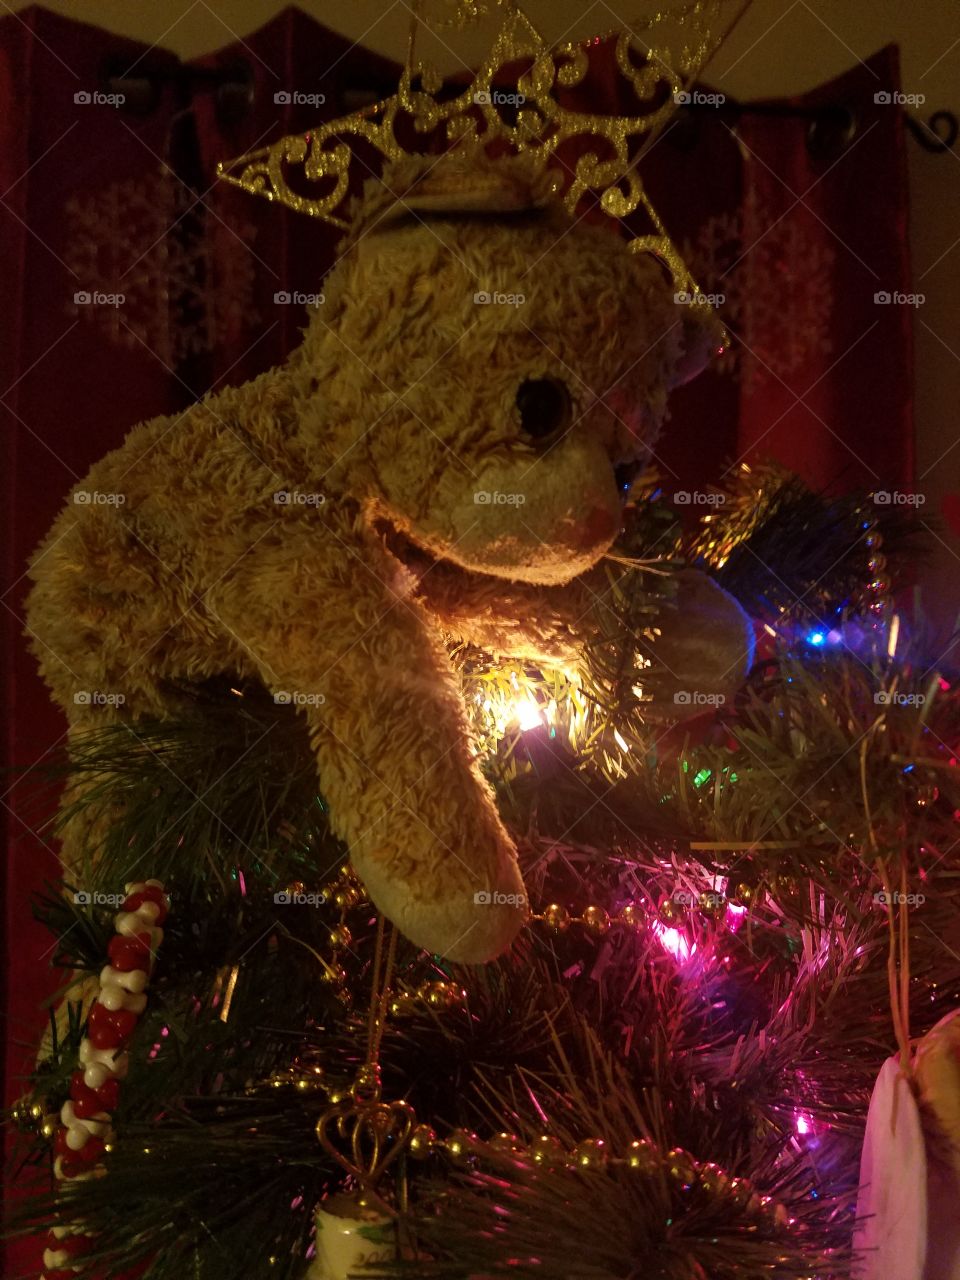 Stuffed animal on Christmas Tree